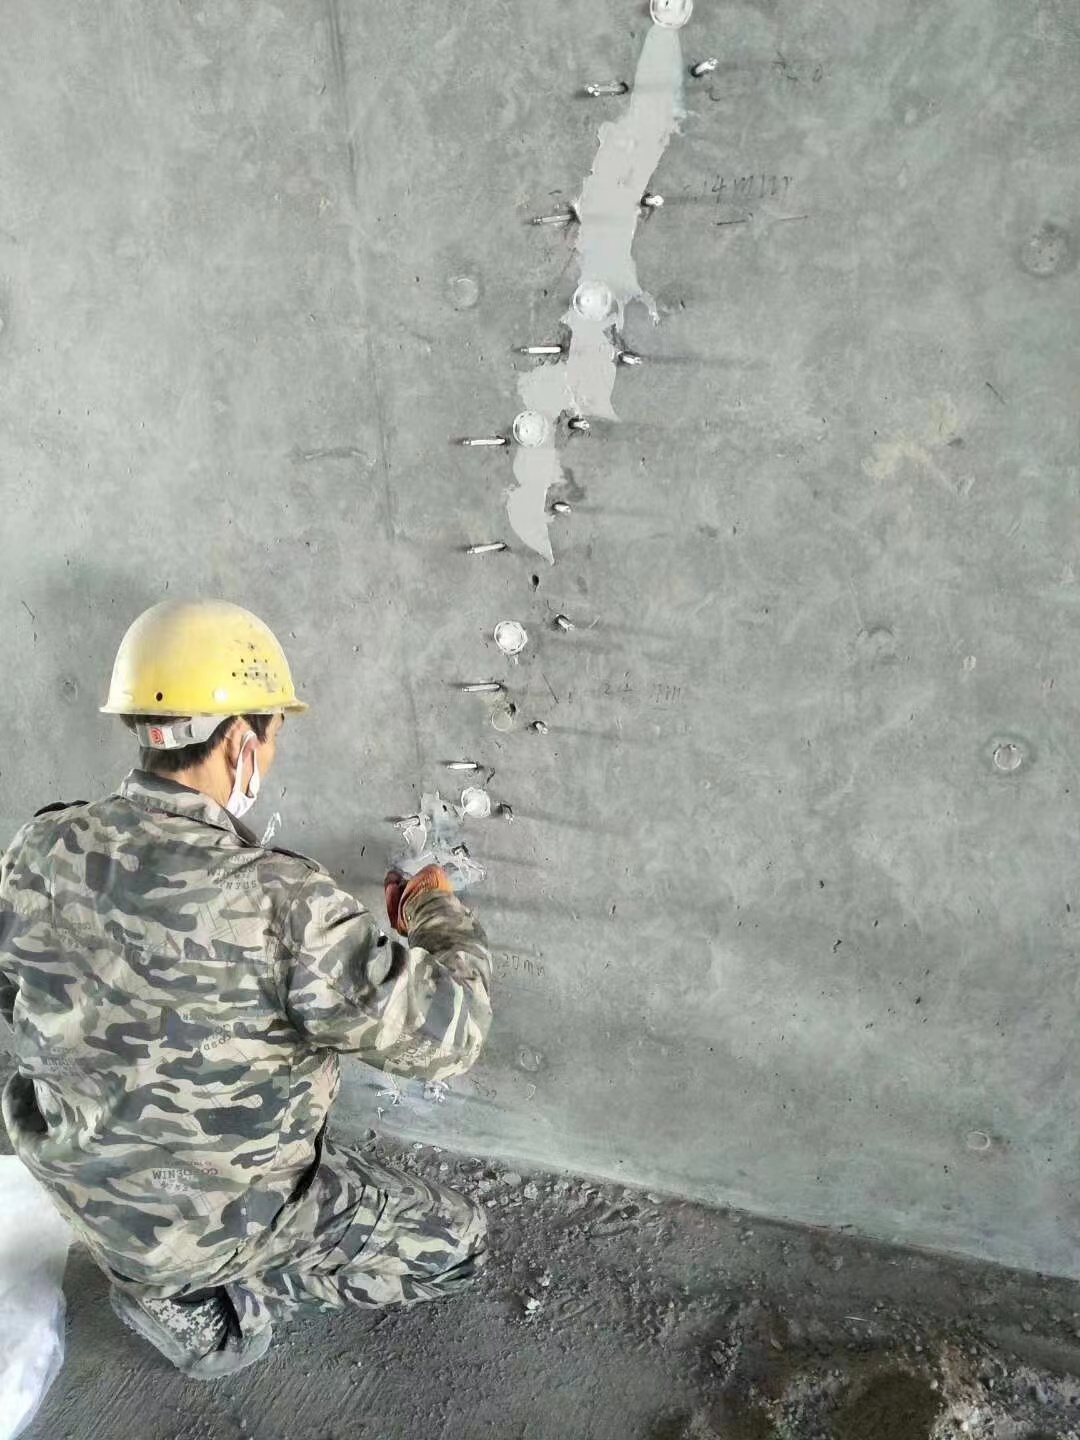 莱阳混凝土楼板裂缝加固施工的方案